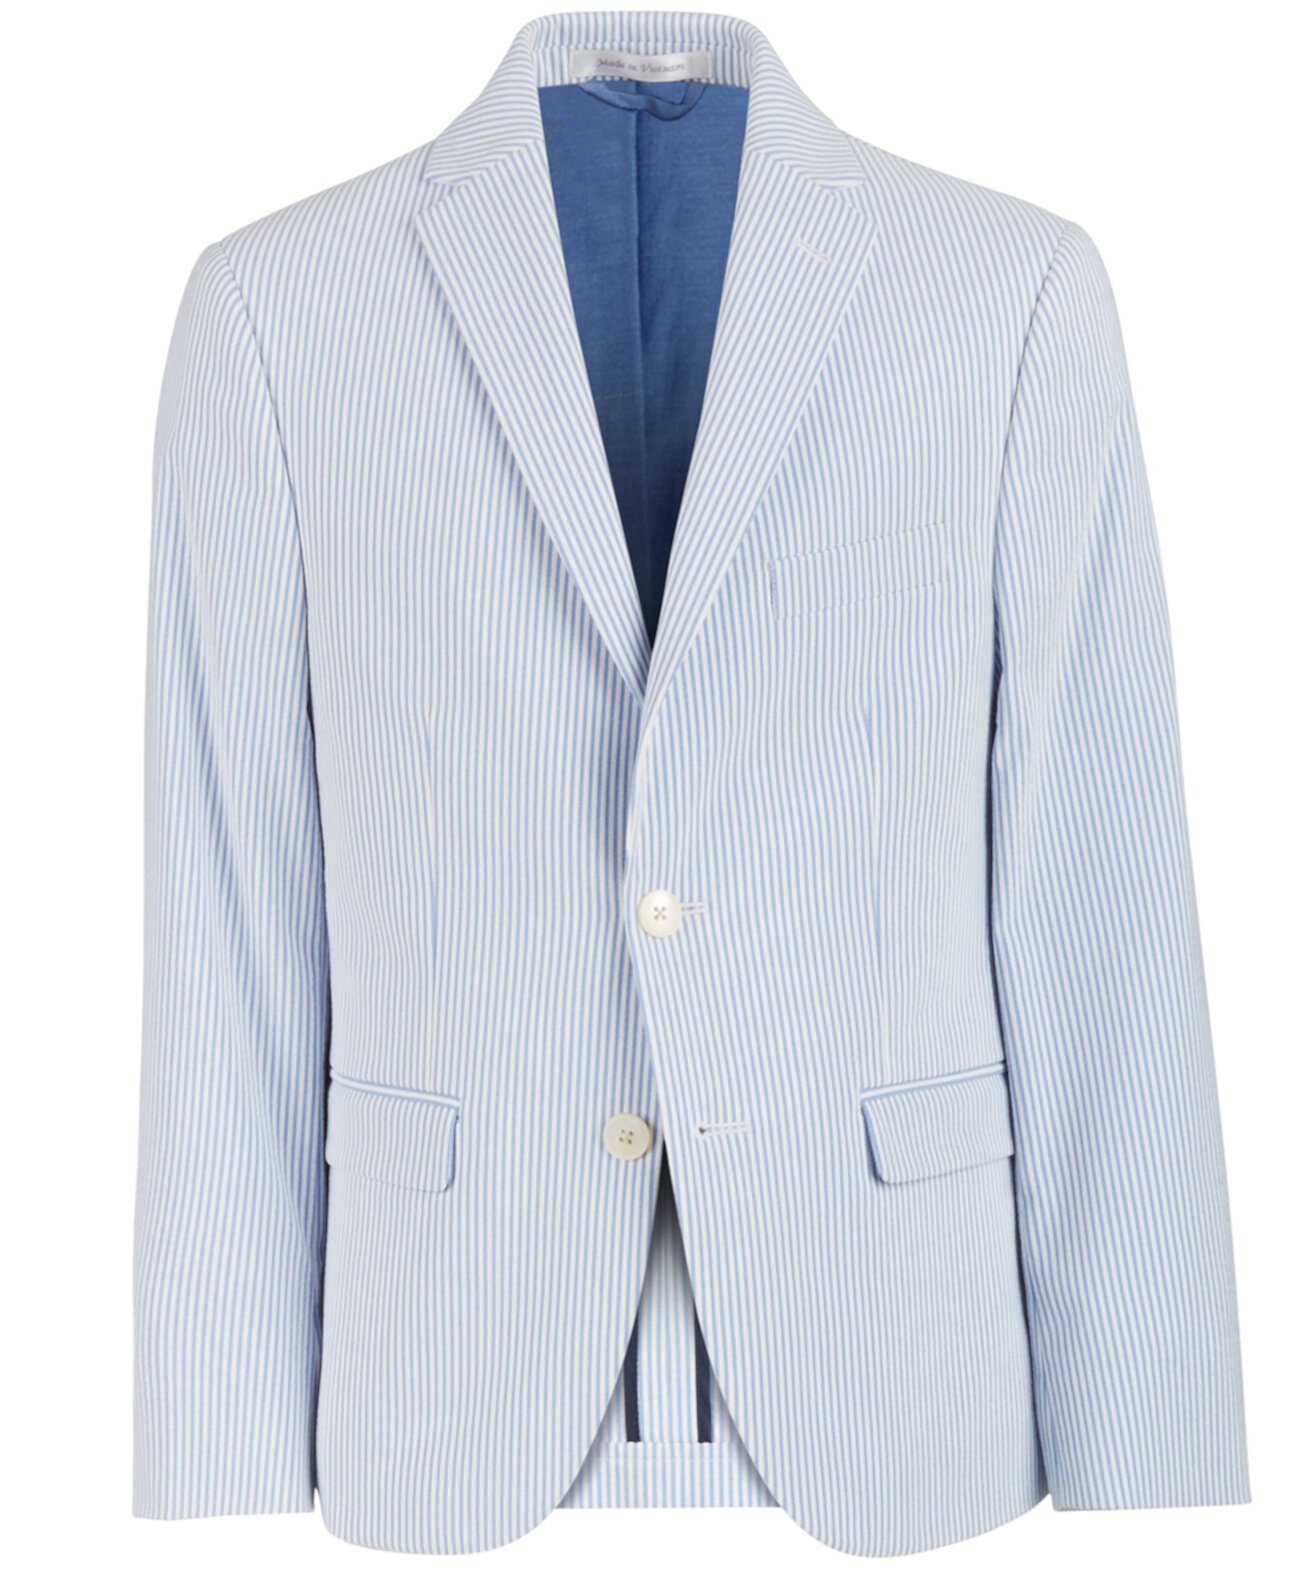 Синие / белые полосатые пиджаки Big Boys Slim-Fit Ralph Lauren